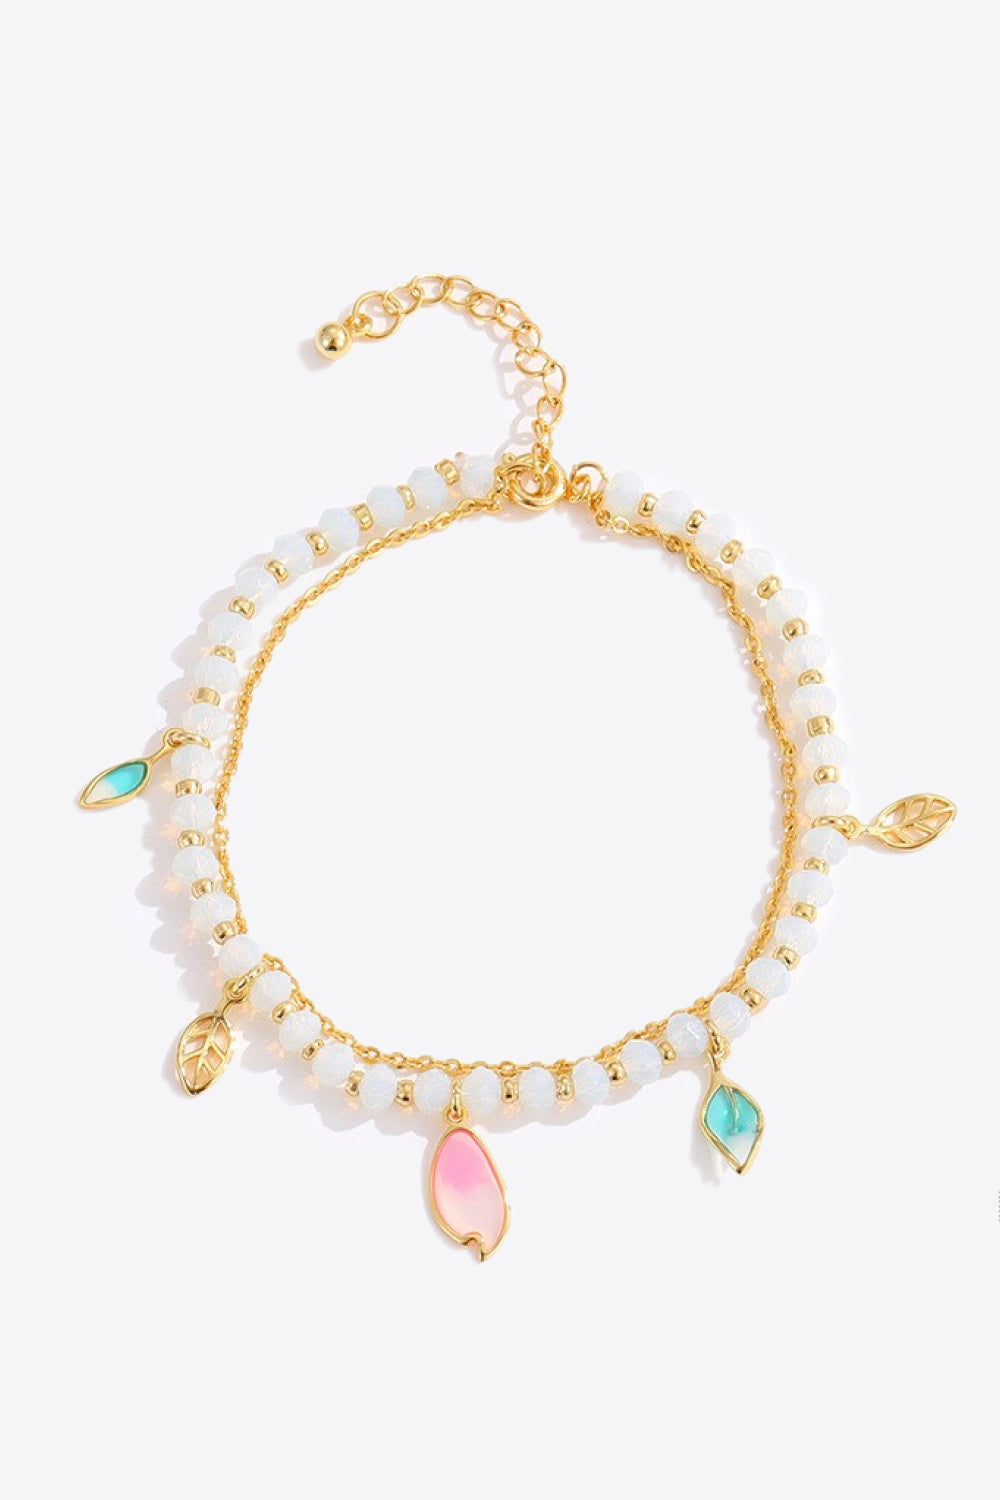 Leaf Charm Layered Bracelet - Gold / One Size - Women’s Jewelry - Bracelets - 1 - 2024